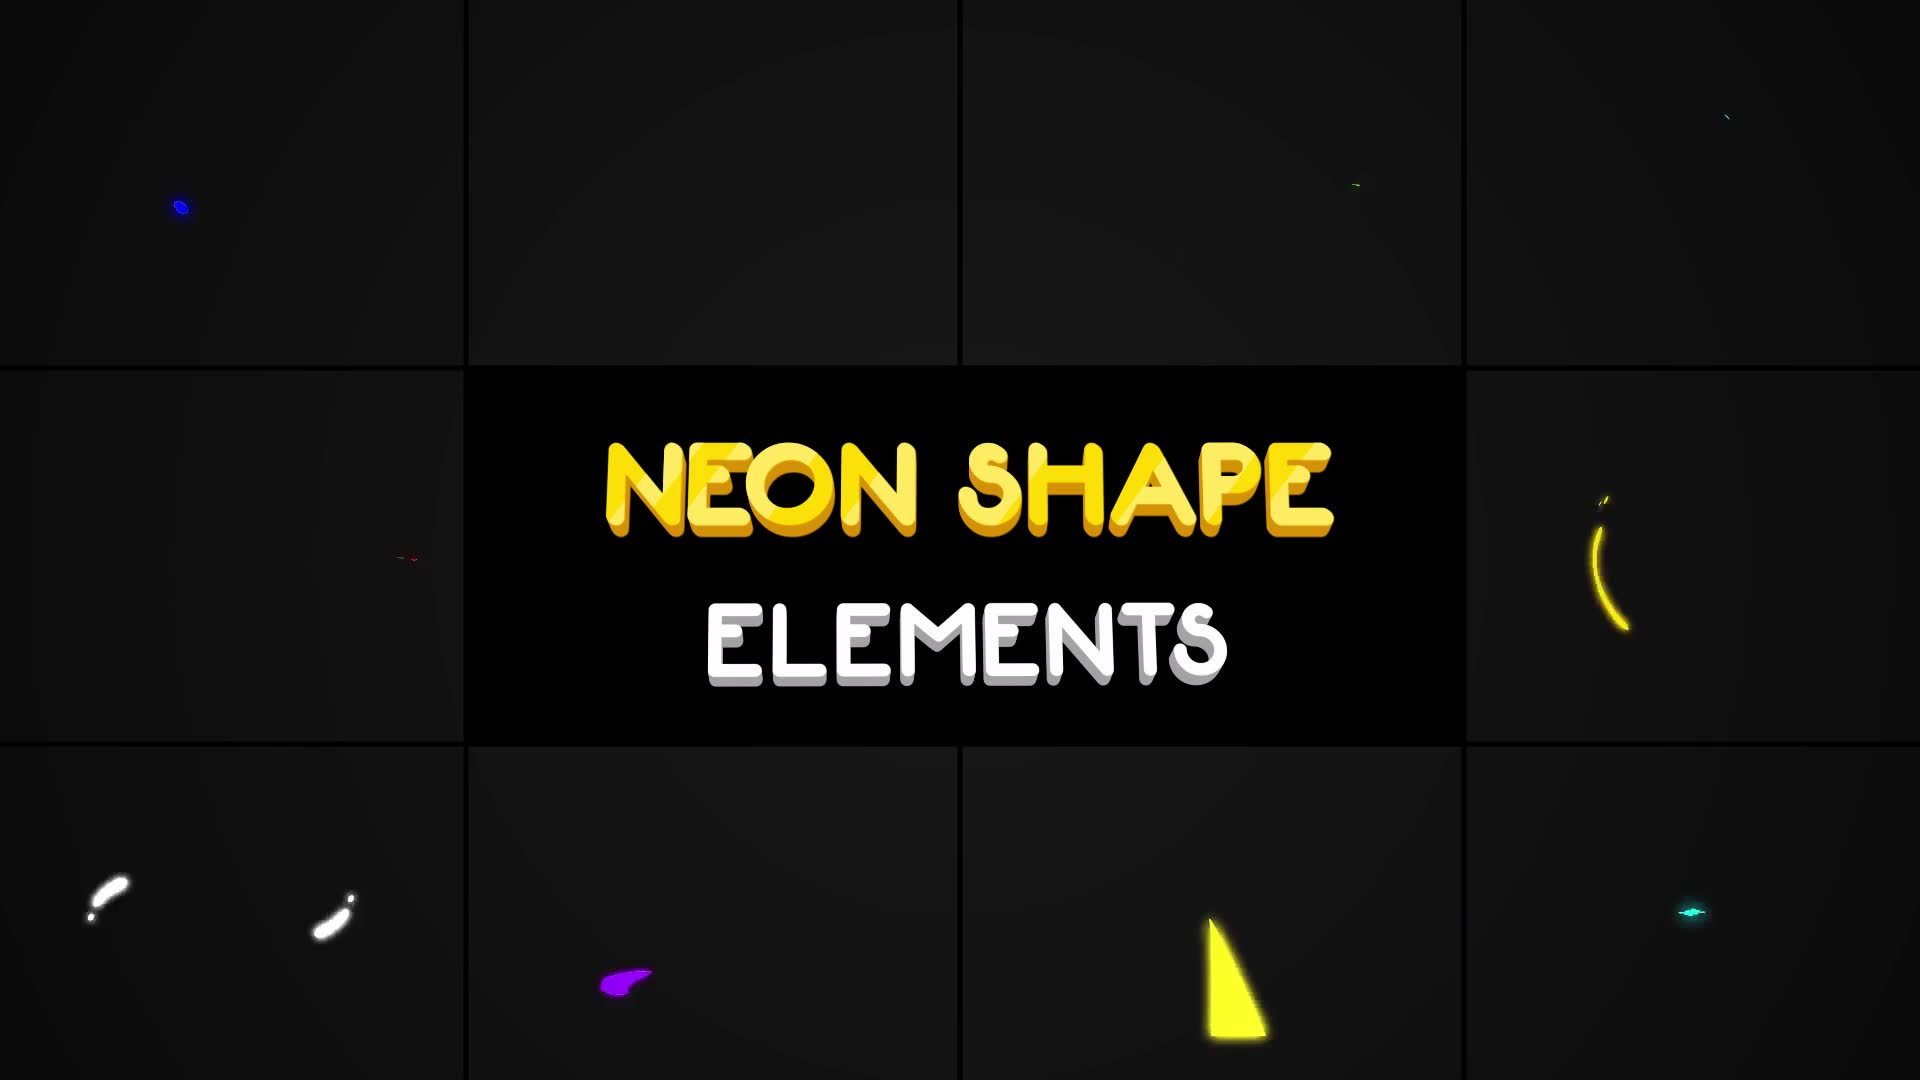 Neon Shape Elements | Premiere Pro MoGRT Videohive 25118798 Premiere Pro Image 2